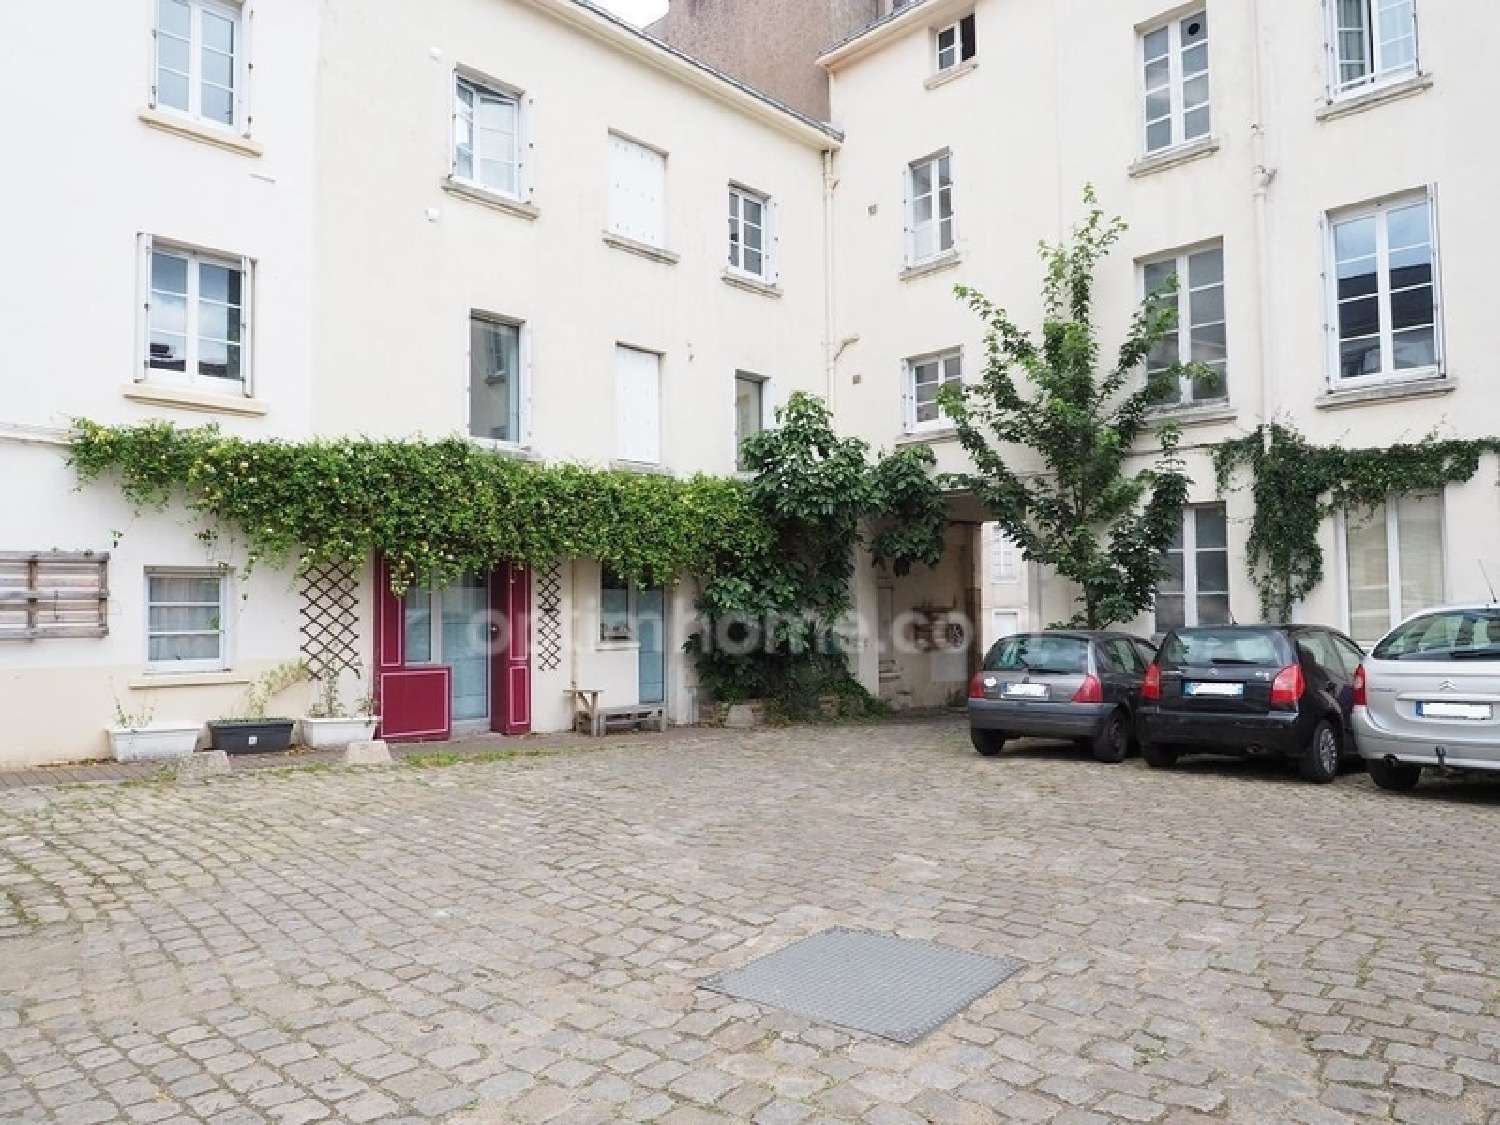  à vendre appartement Nantes Loire-Atlantique 3